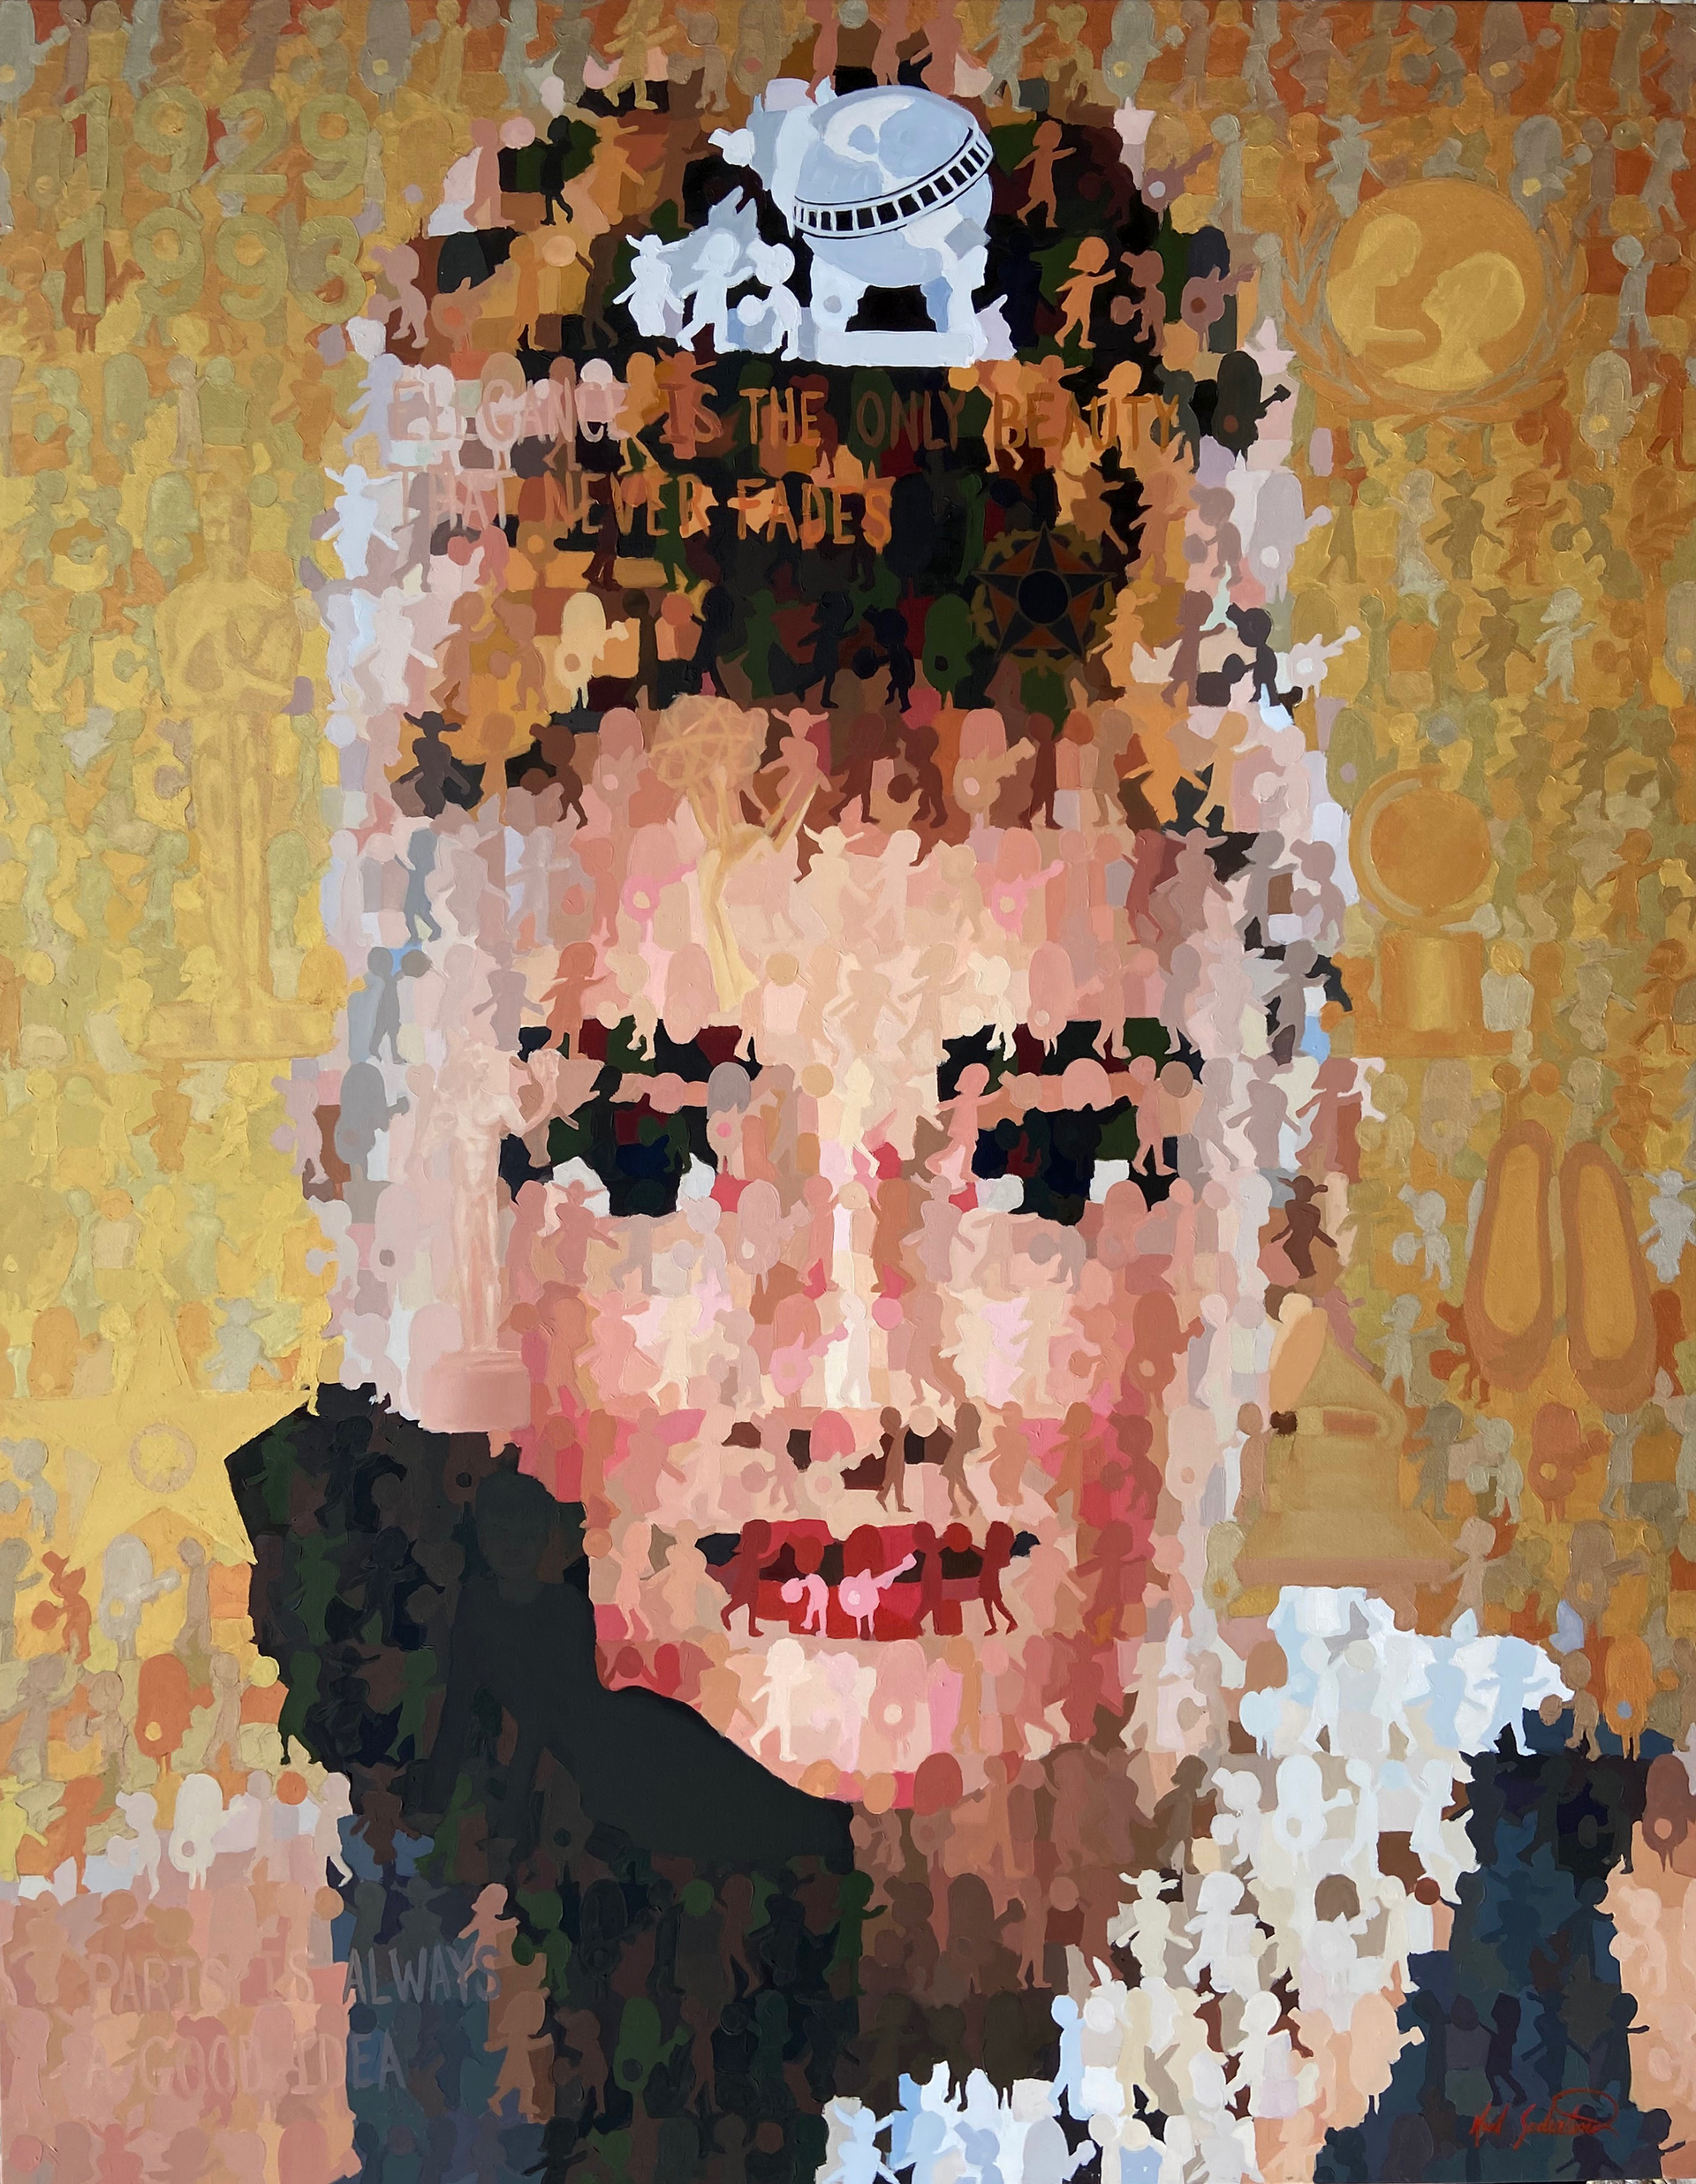 Audrey in Gold by Karl Soderlund